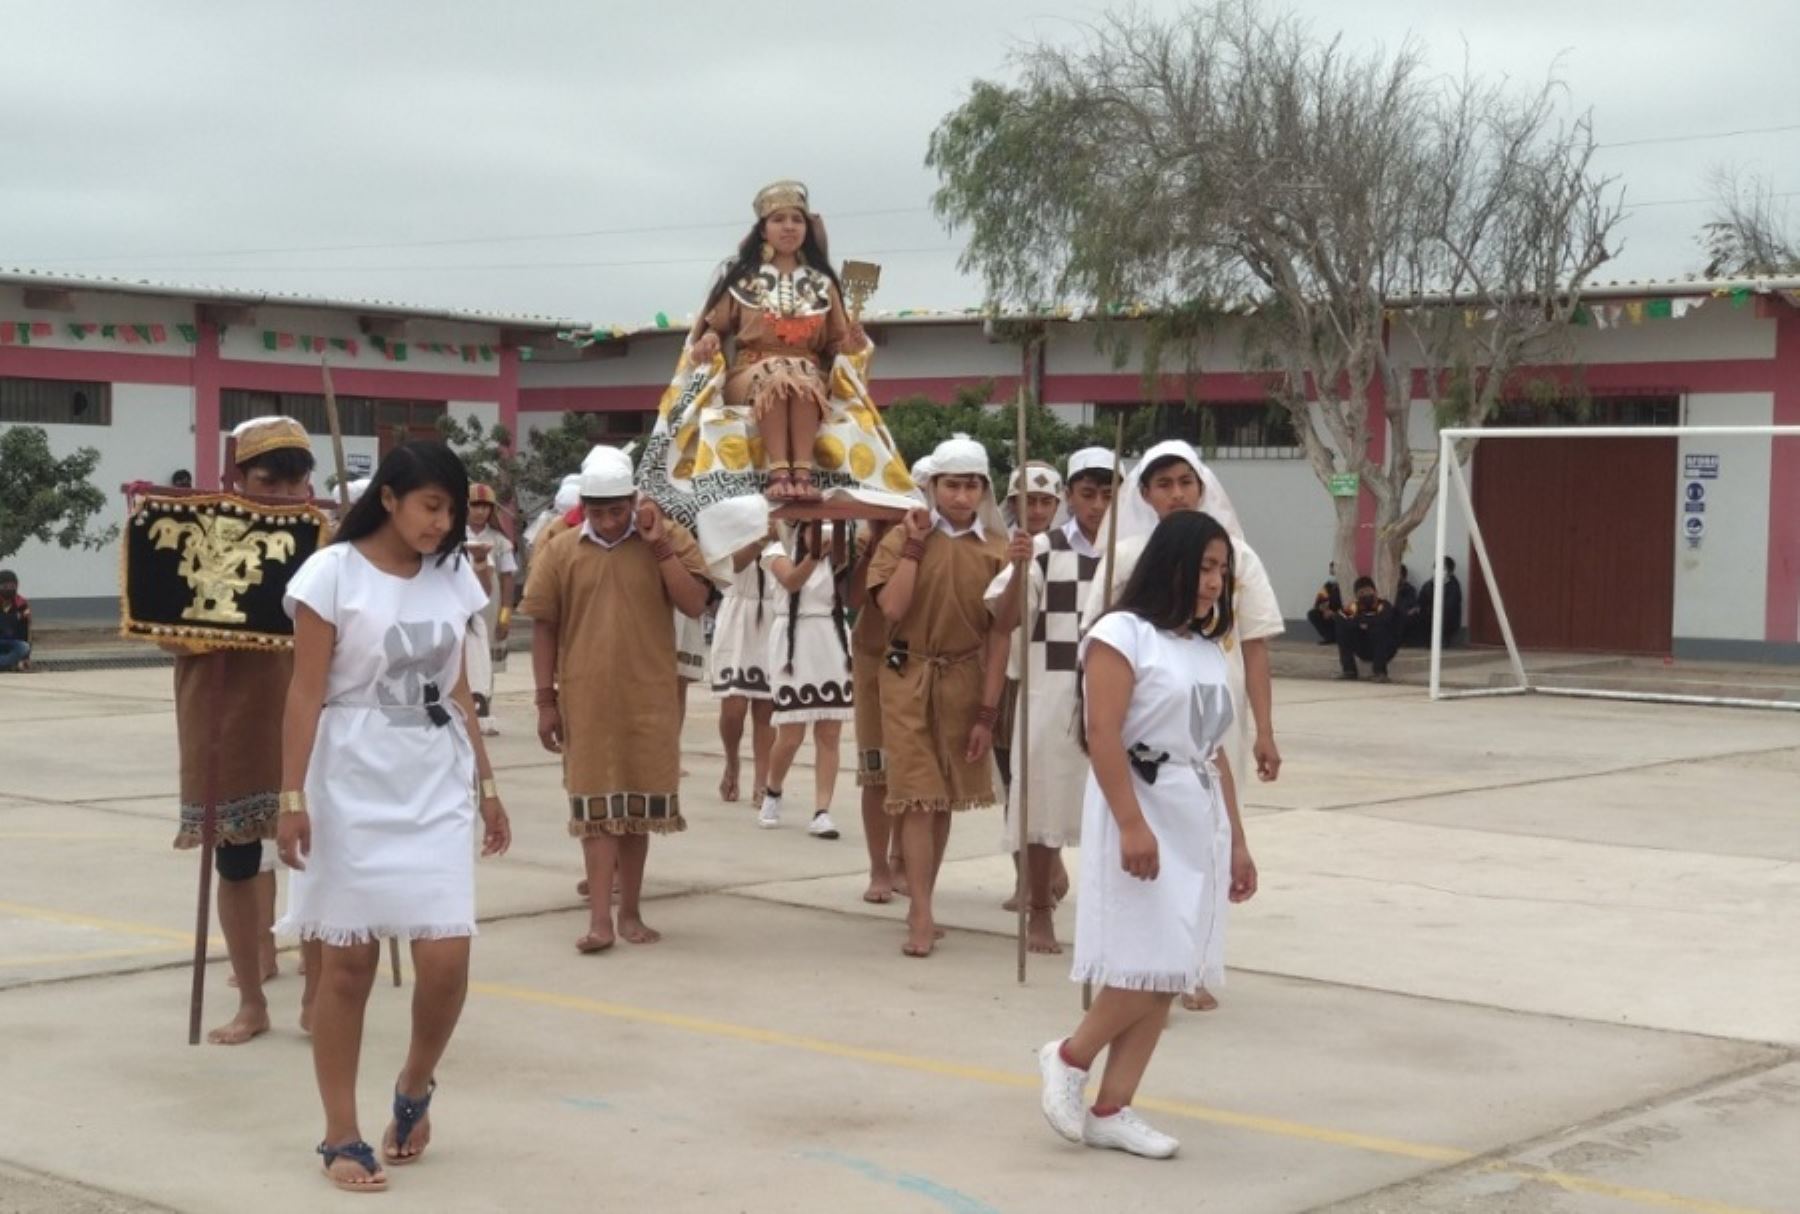 En el marco del Festival Shi MuchiK Fest 2022, los museos lambayecanos Tumbas Reales de Sipán, Huaca Rajada-Sipán y Chotuna-Chornancap, administrados por el Ministerio de Cultura, presentan hoy escenificaciones de rituales prehispánicos en la Plaza de Armas de Trujillo.